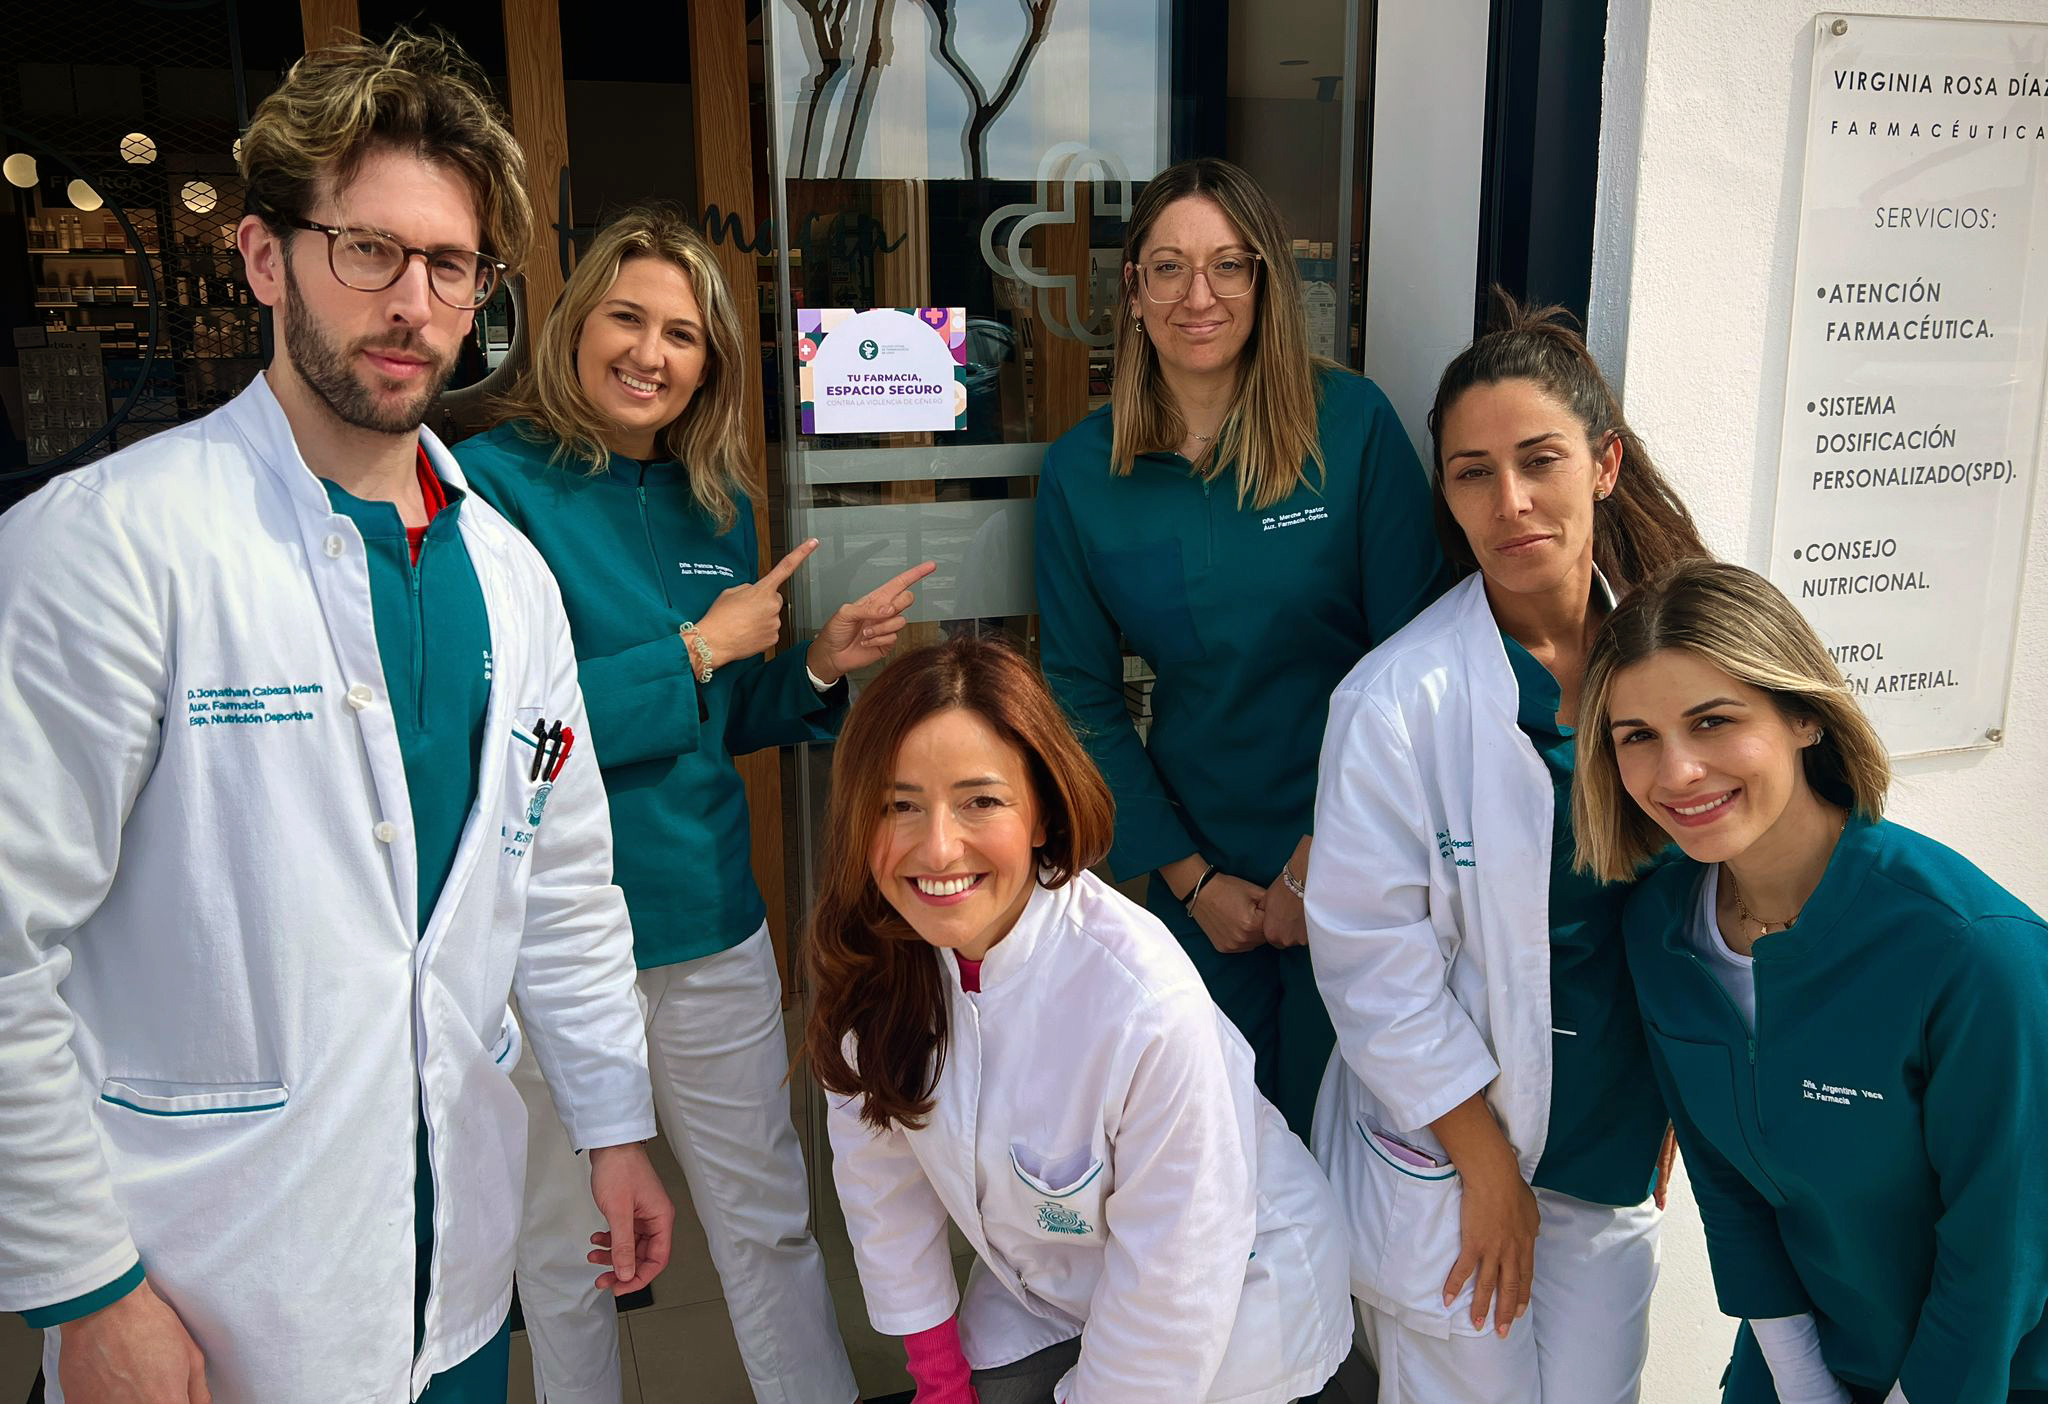 El Colegio de Farmacéuticos de Cádiz recibe el premio Meridiana del Instituto Andaluz de la Mujer por su iniciativa “Farmacia, Espacio Seguro”, en reconocimiento a su contribución contra la violencia de género